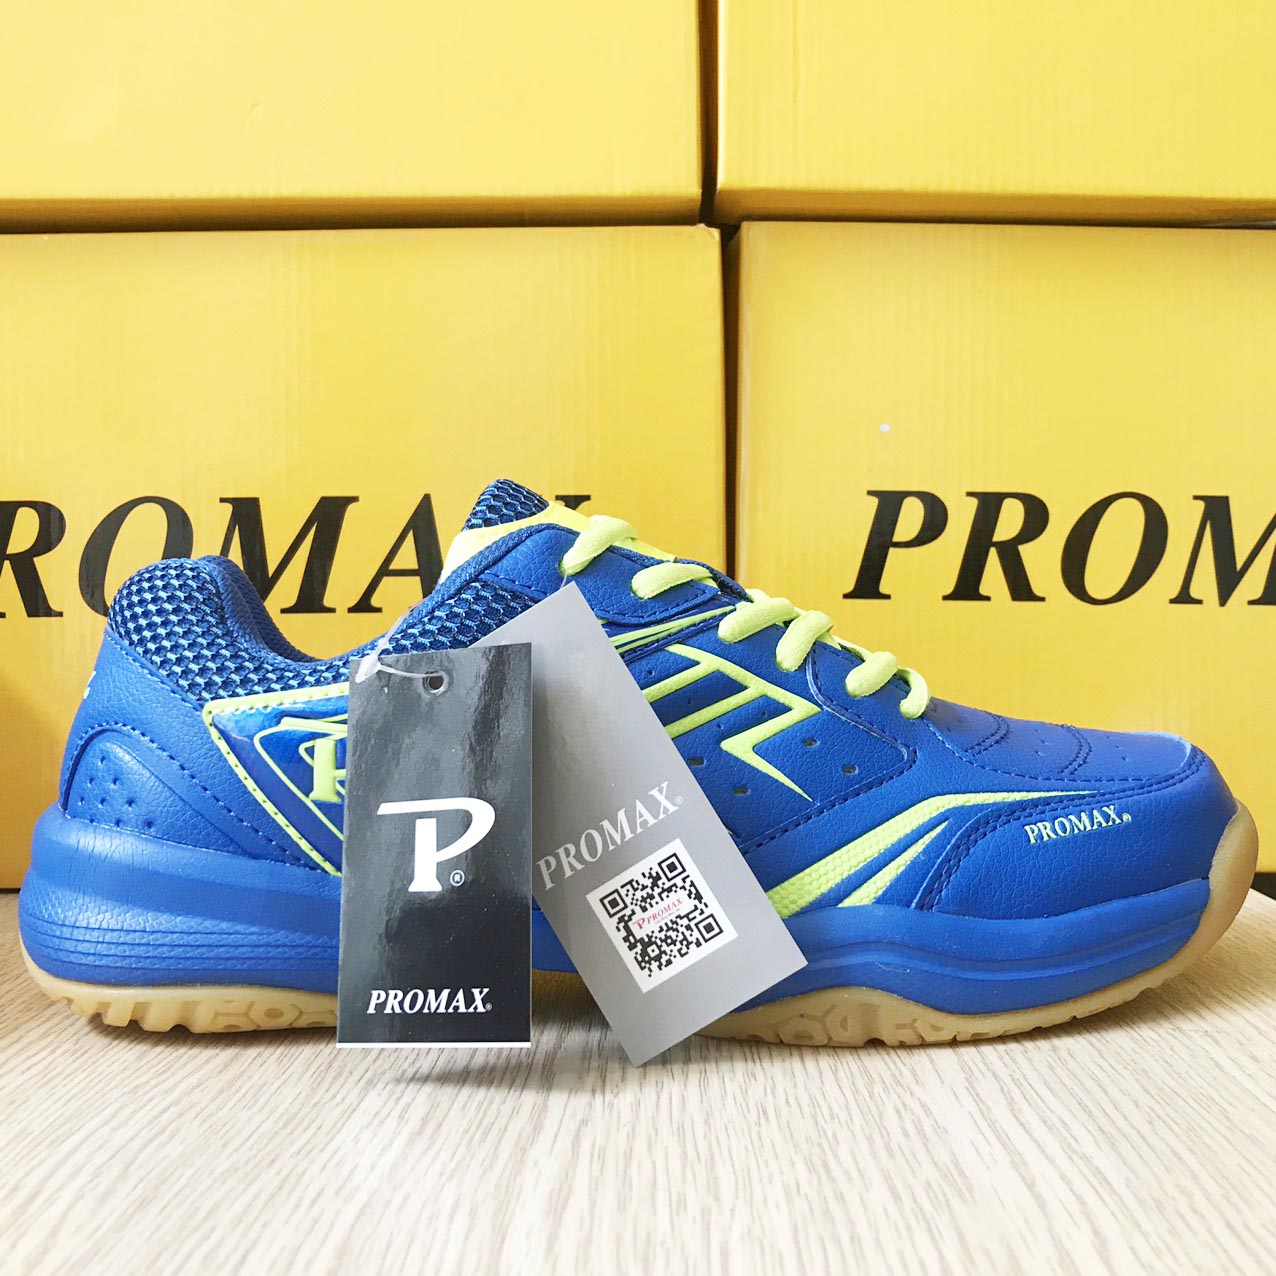 Giày Promax PR-19003 chuyên dụng chơi cầu lông, bóng bàn chính hãng